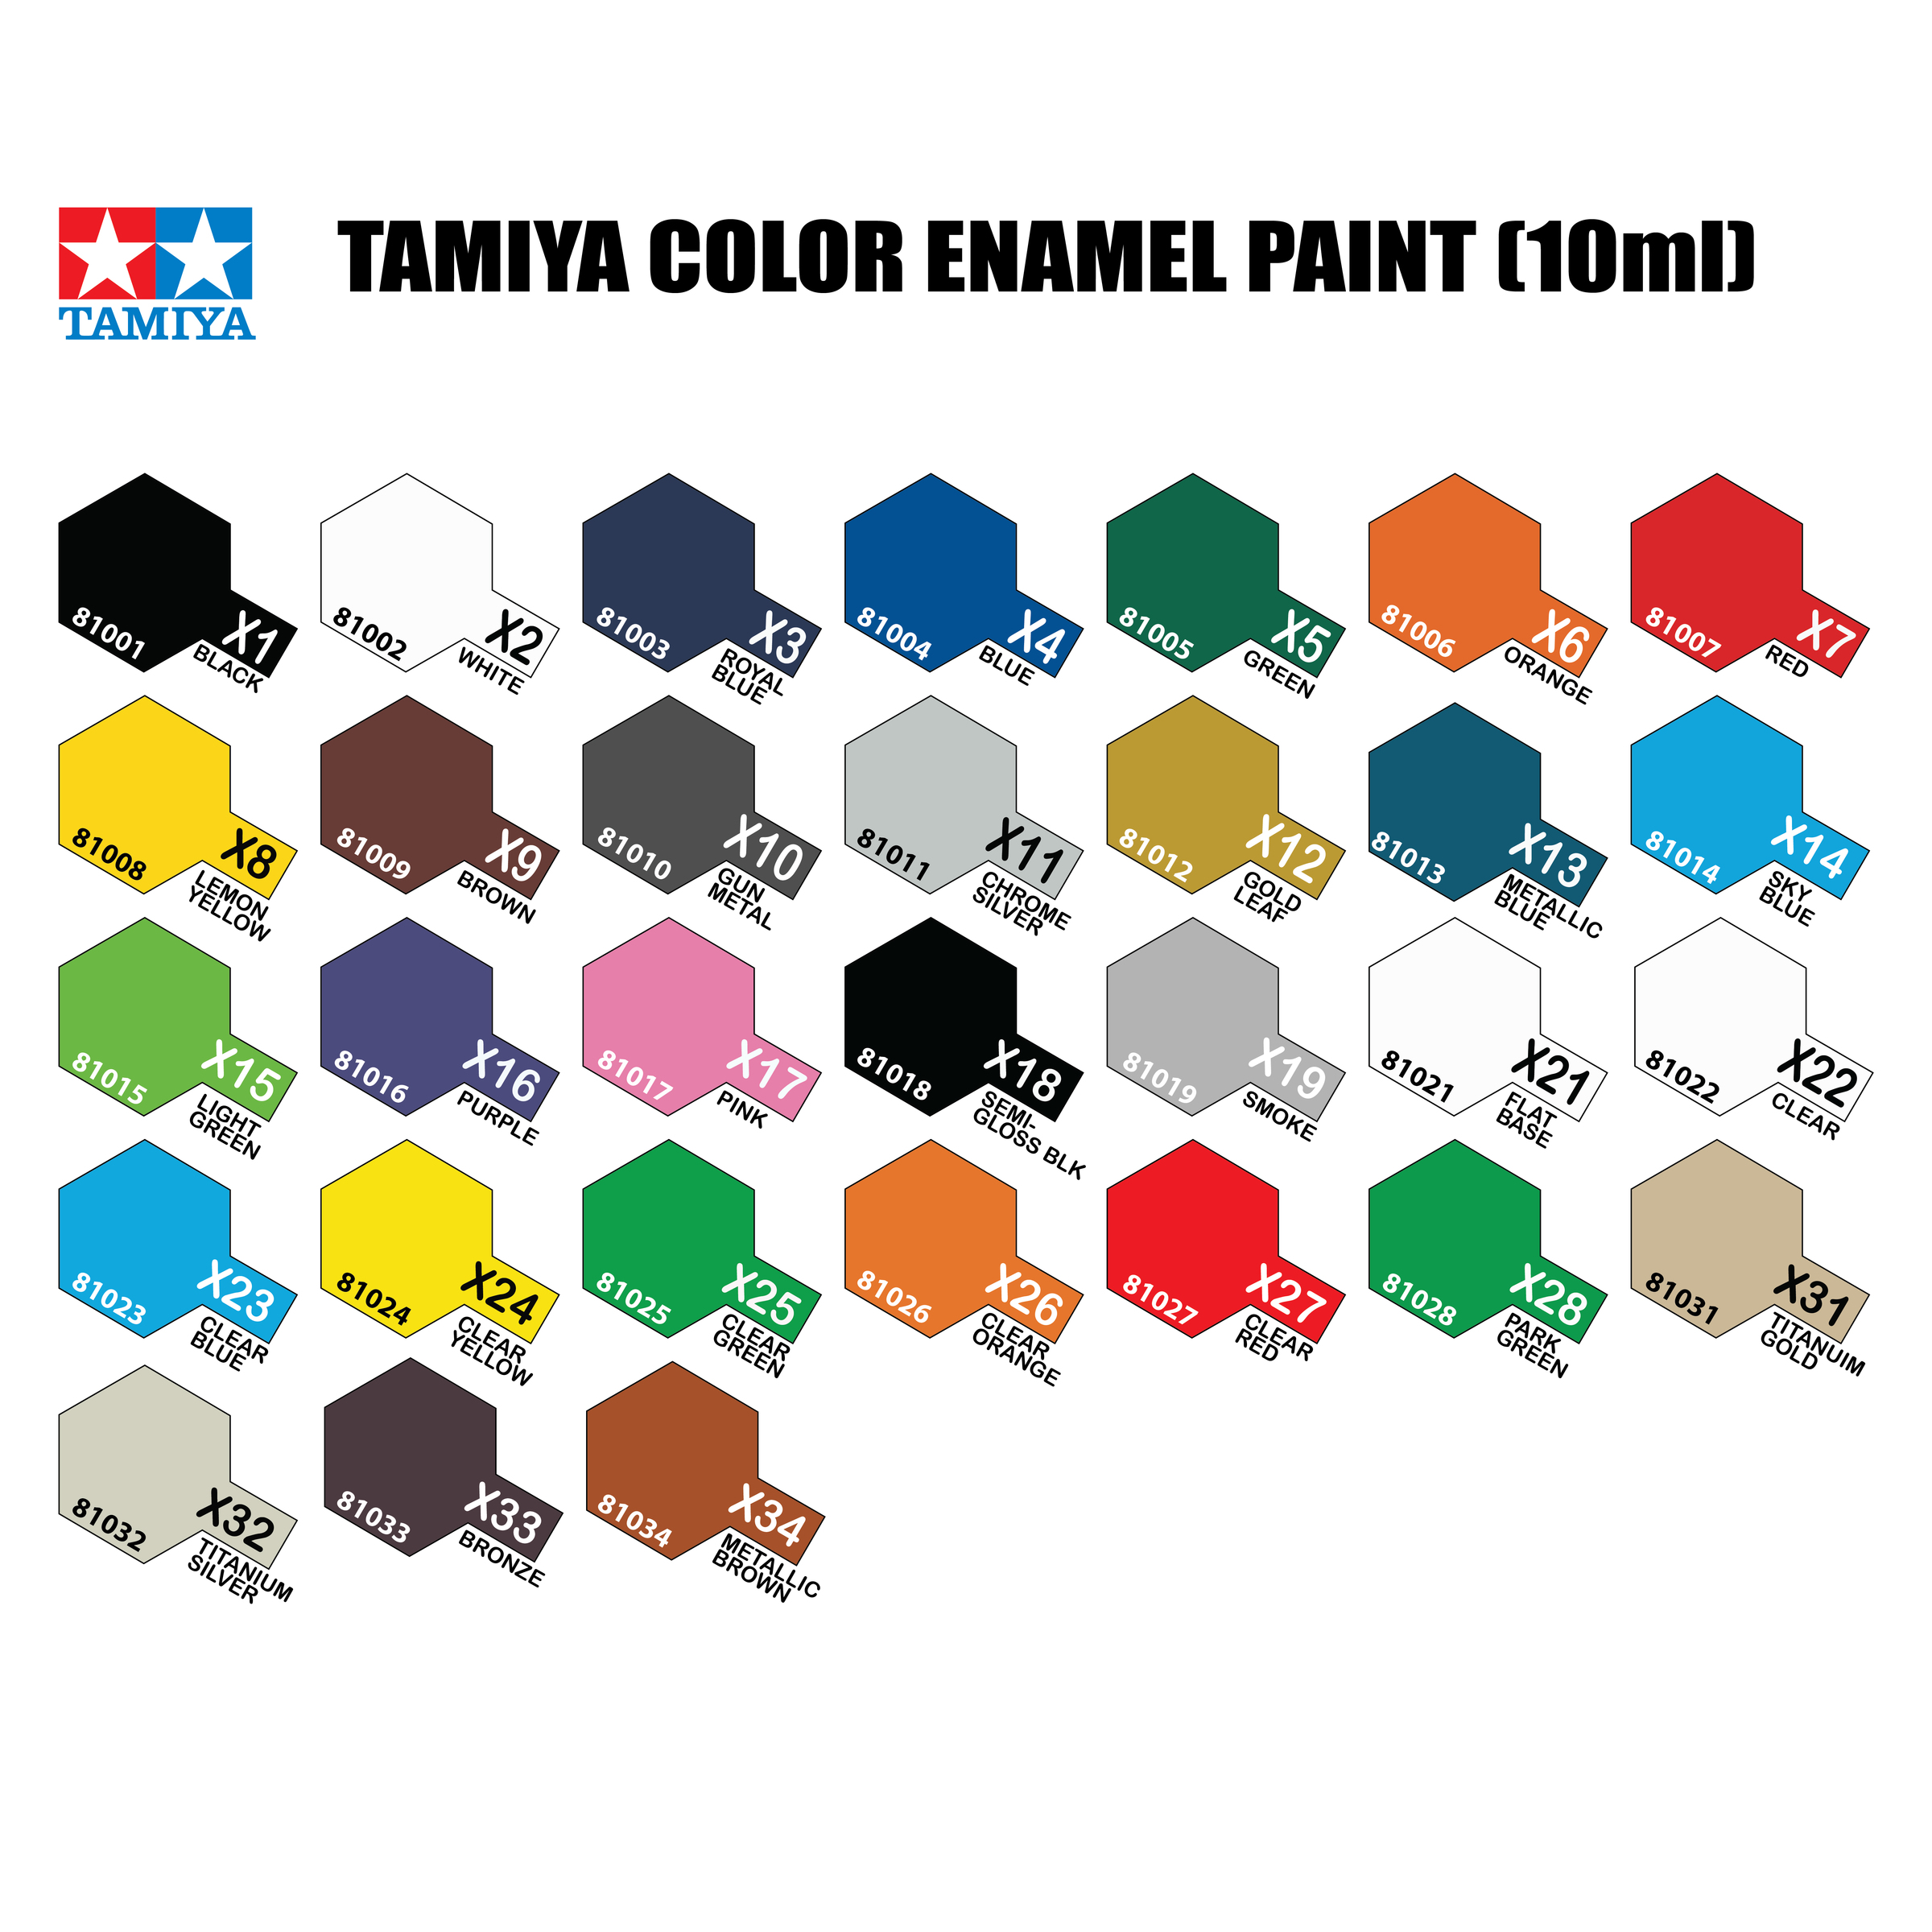 Tamiya Acrylic Paint Chart Pdf